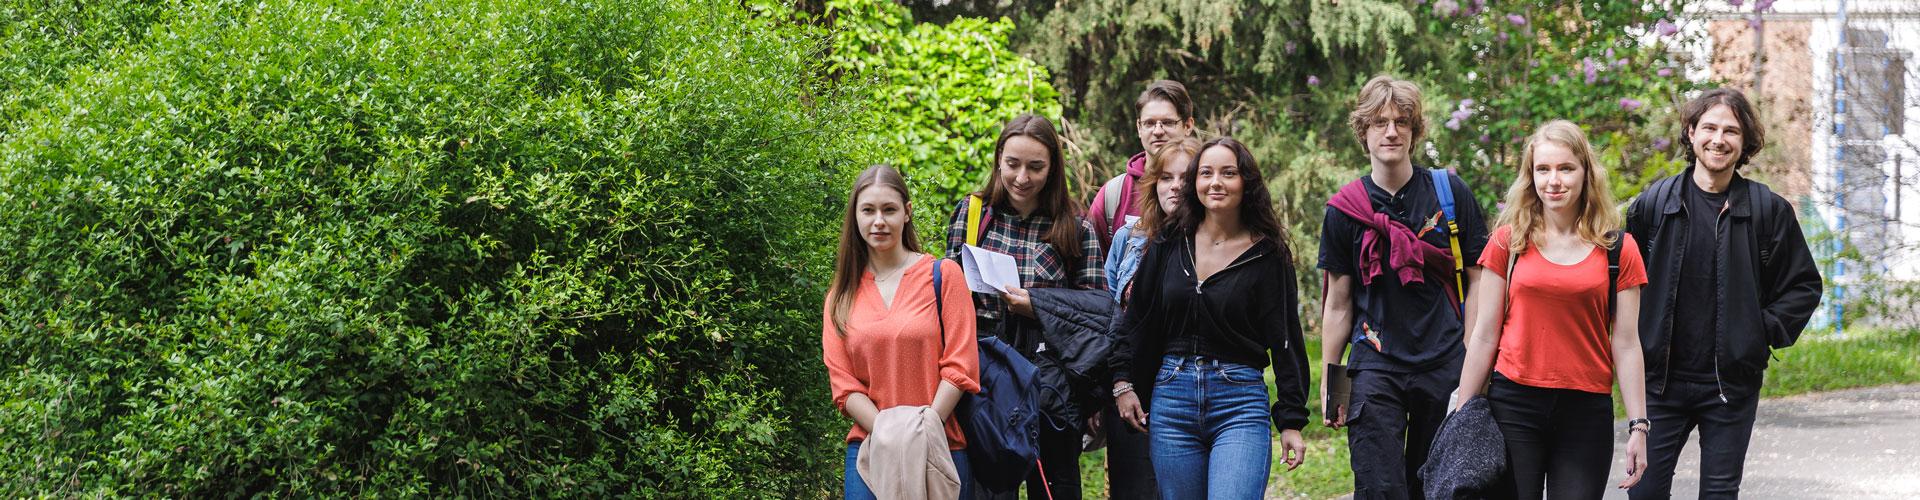 Filozófia Tanszék slider képe: diákok sétálnak a Botanikus kertben a tanszék felé